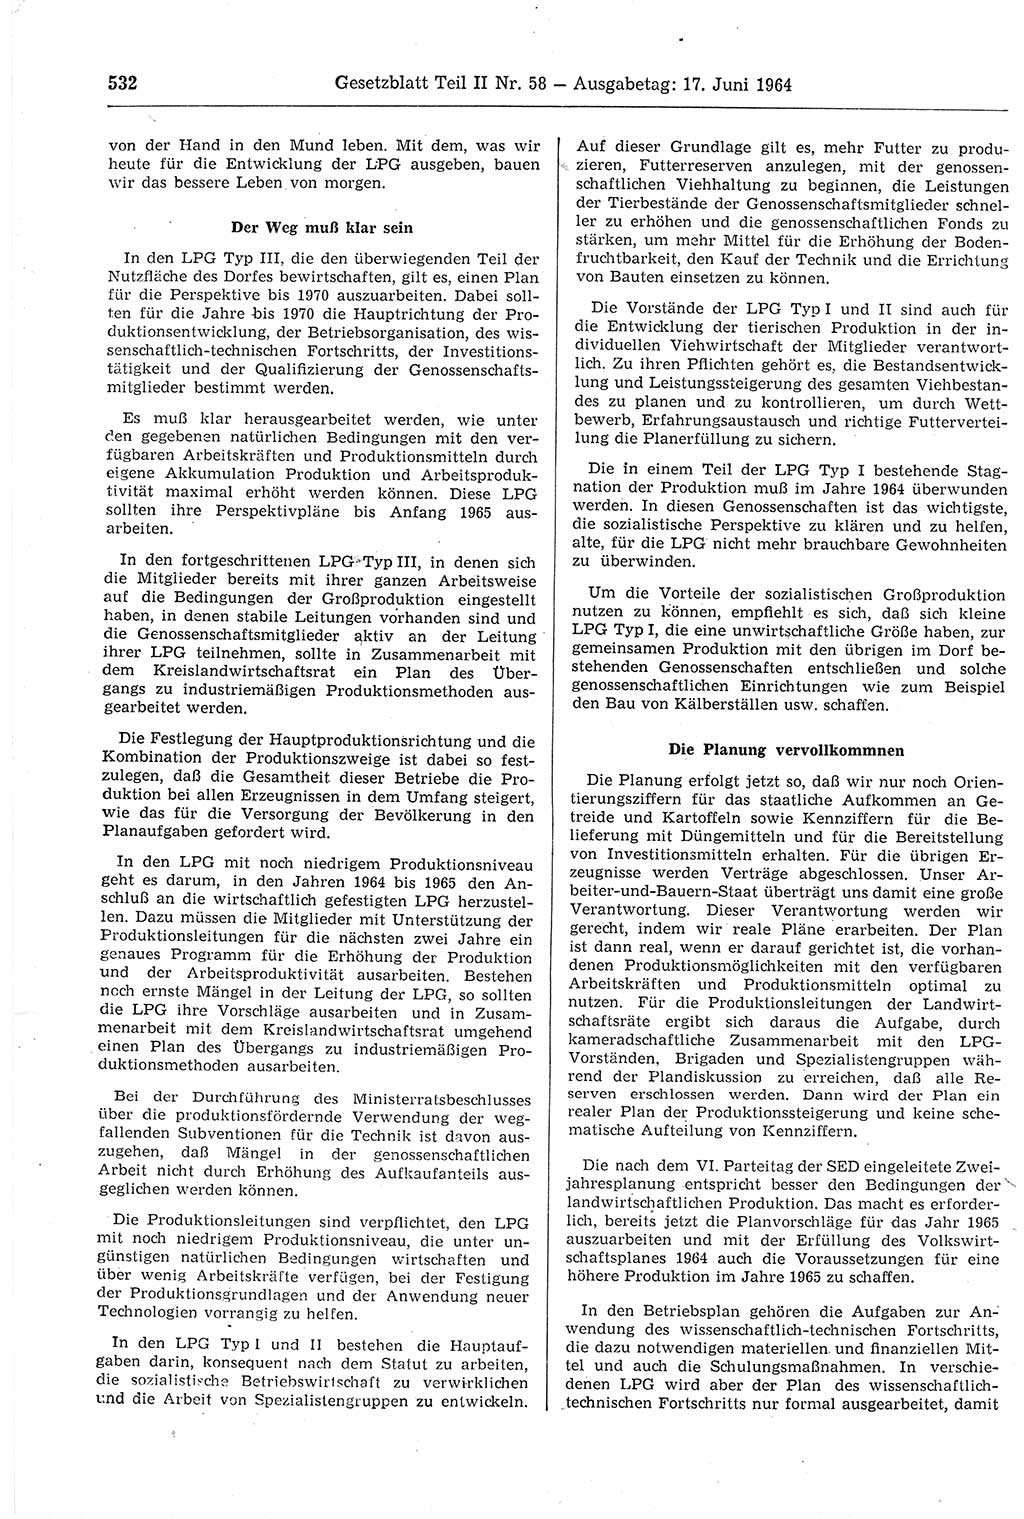 Gesetzblatt (GBl.) der Deutschen Demokratischen Republik (DDR) Teil ⅠⅠ 1964, Seite 532 (GBl. DDR ⅠⅠ 1964, S. 532)